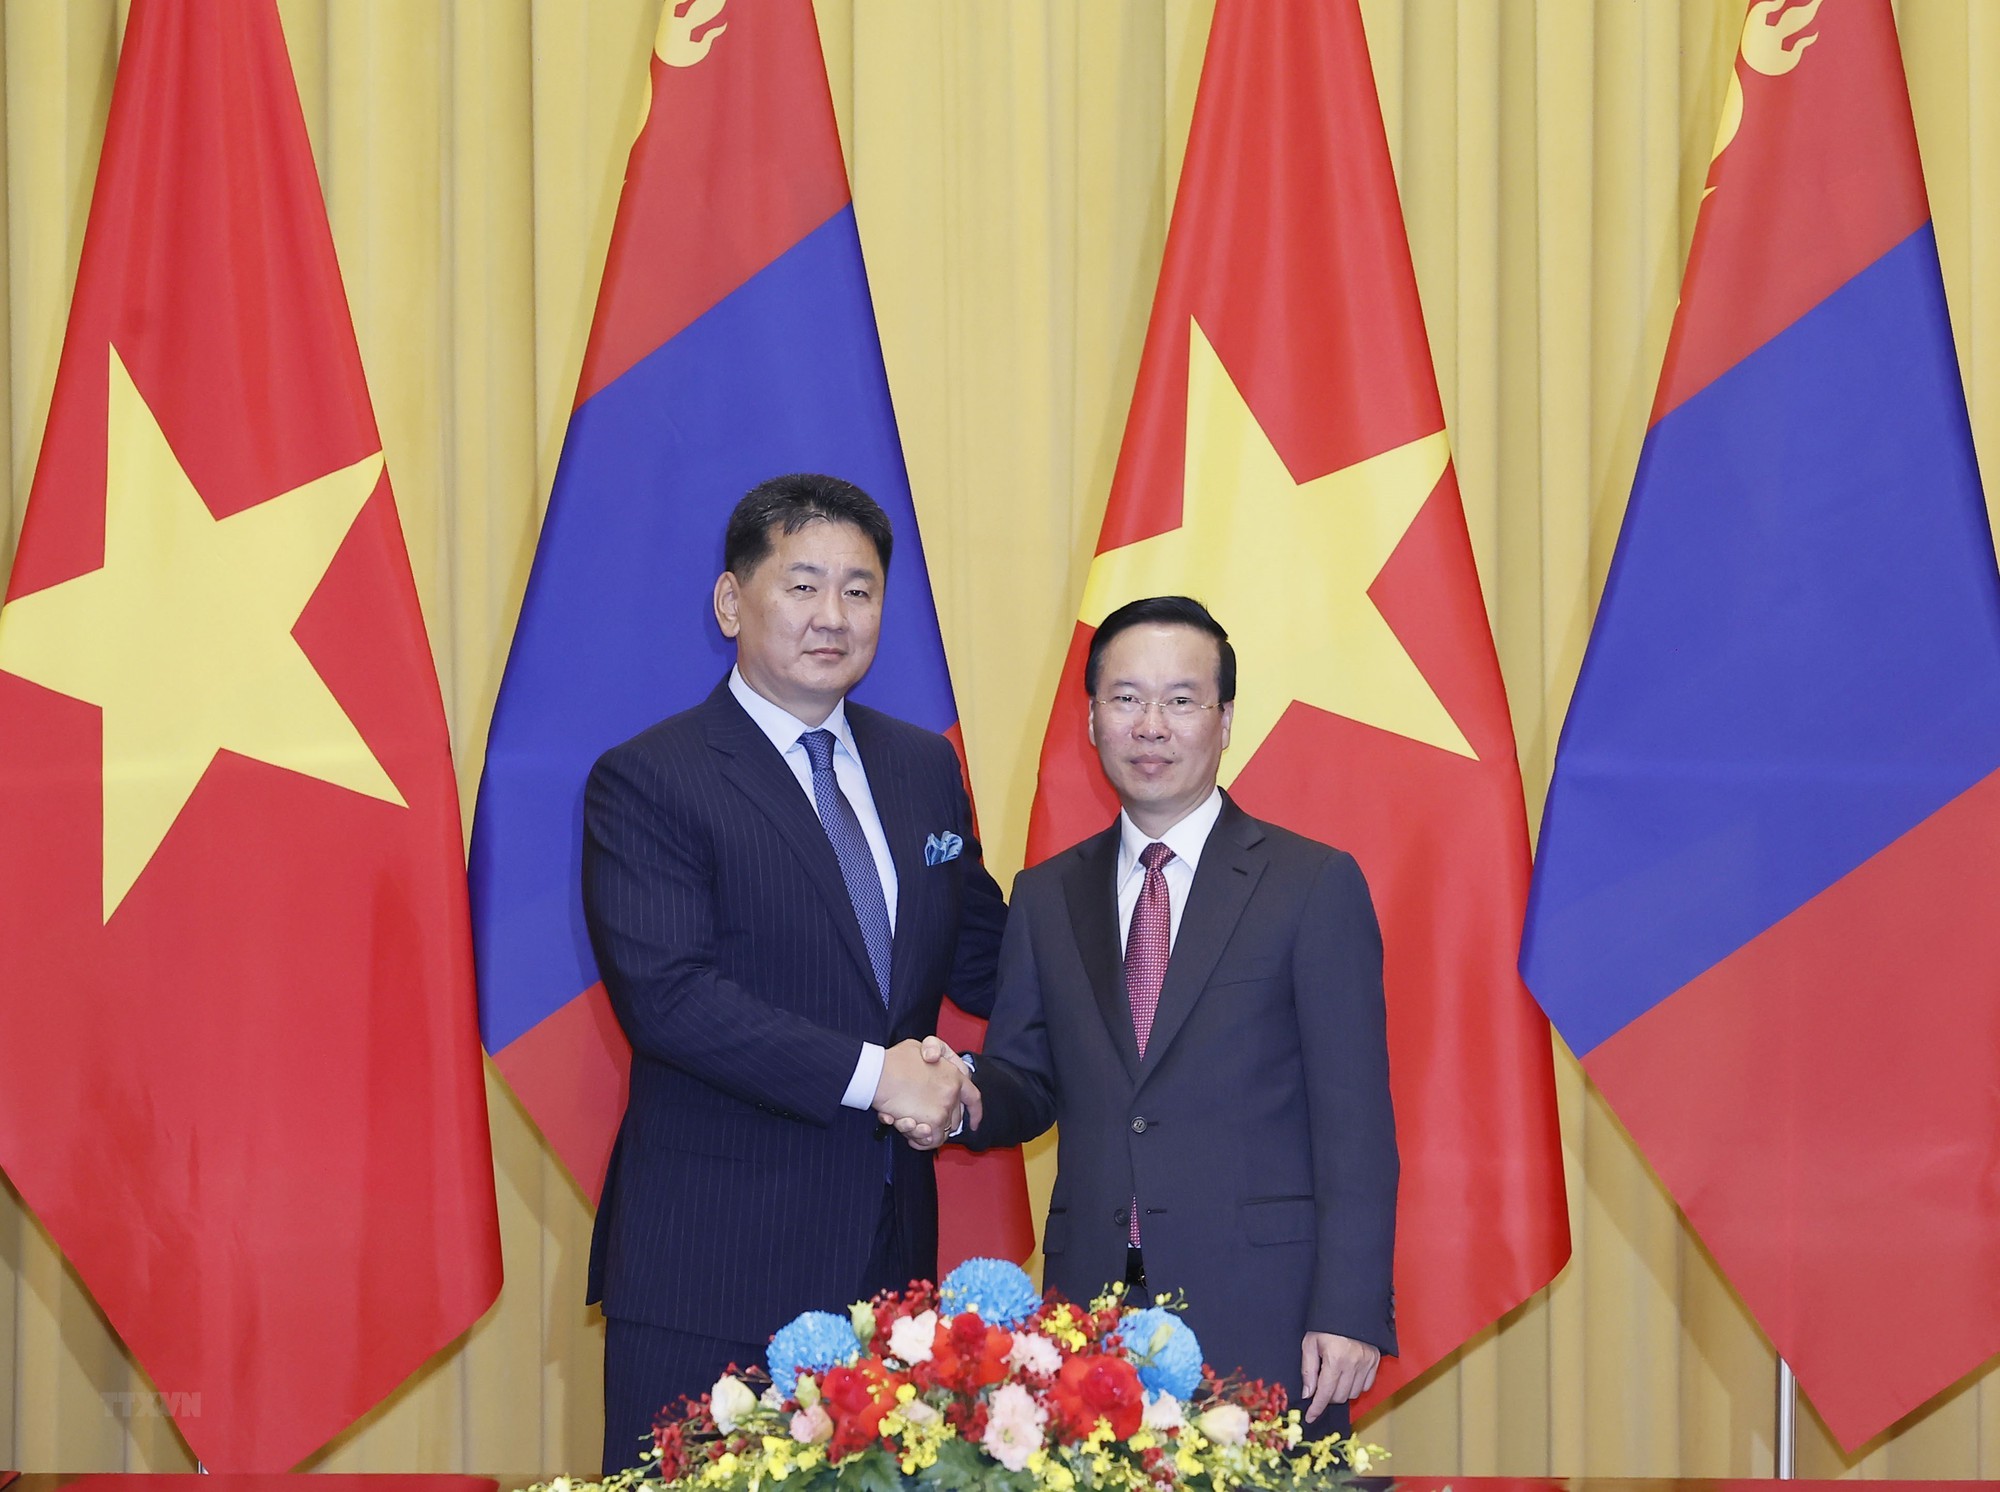 Việt Nam và Mông Cổ ký hiệp định miễn thị thực - Ảnh 1.